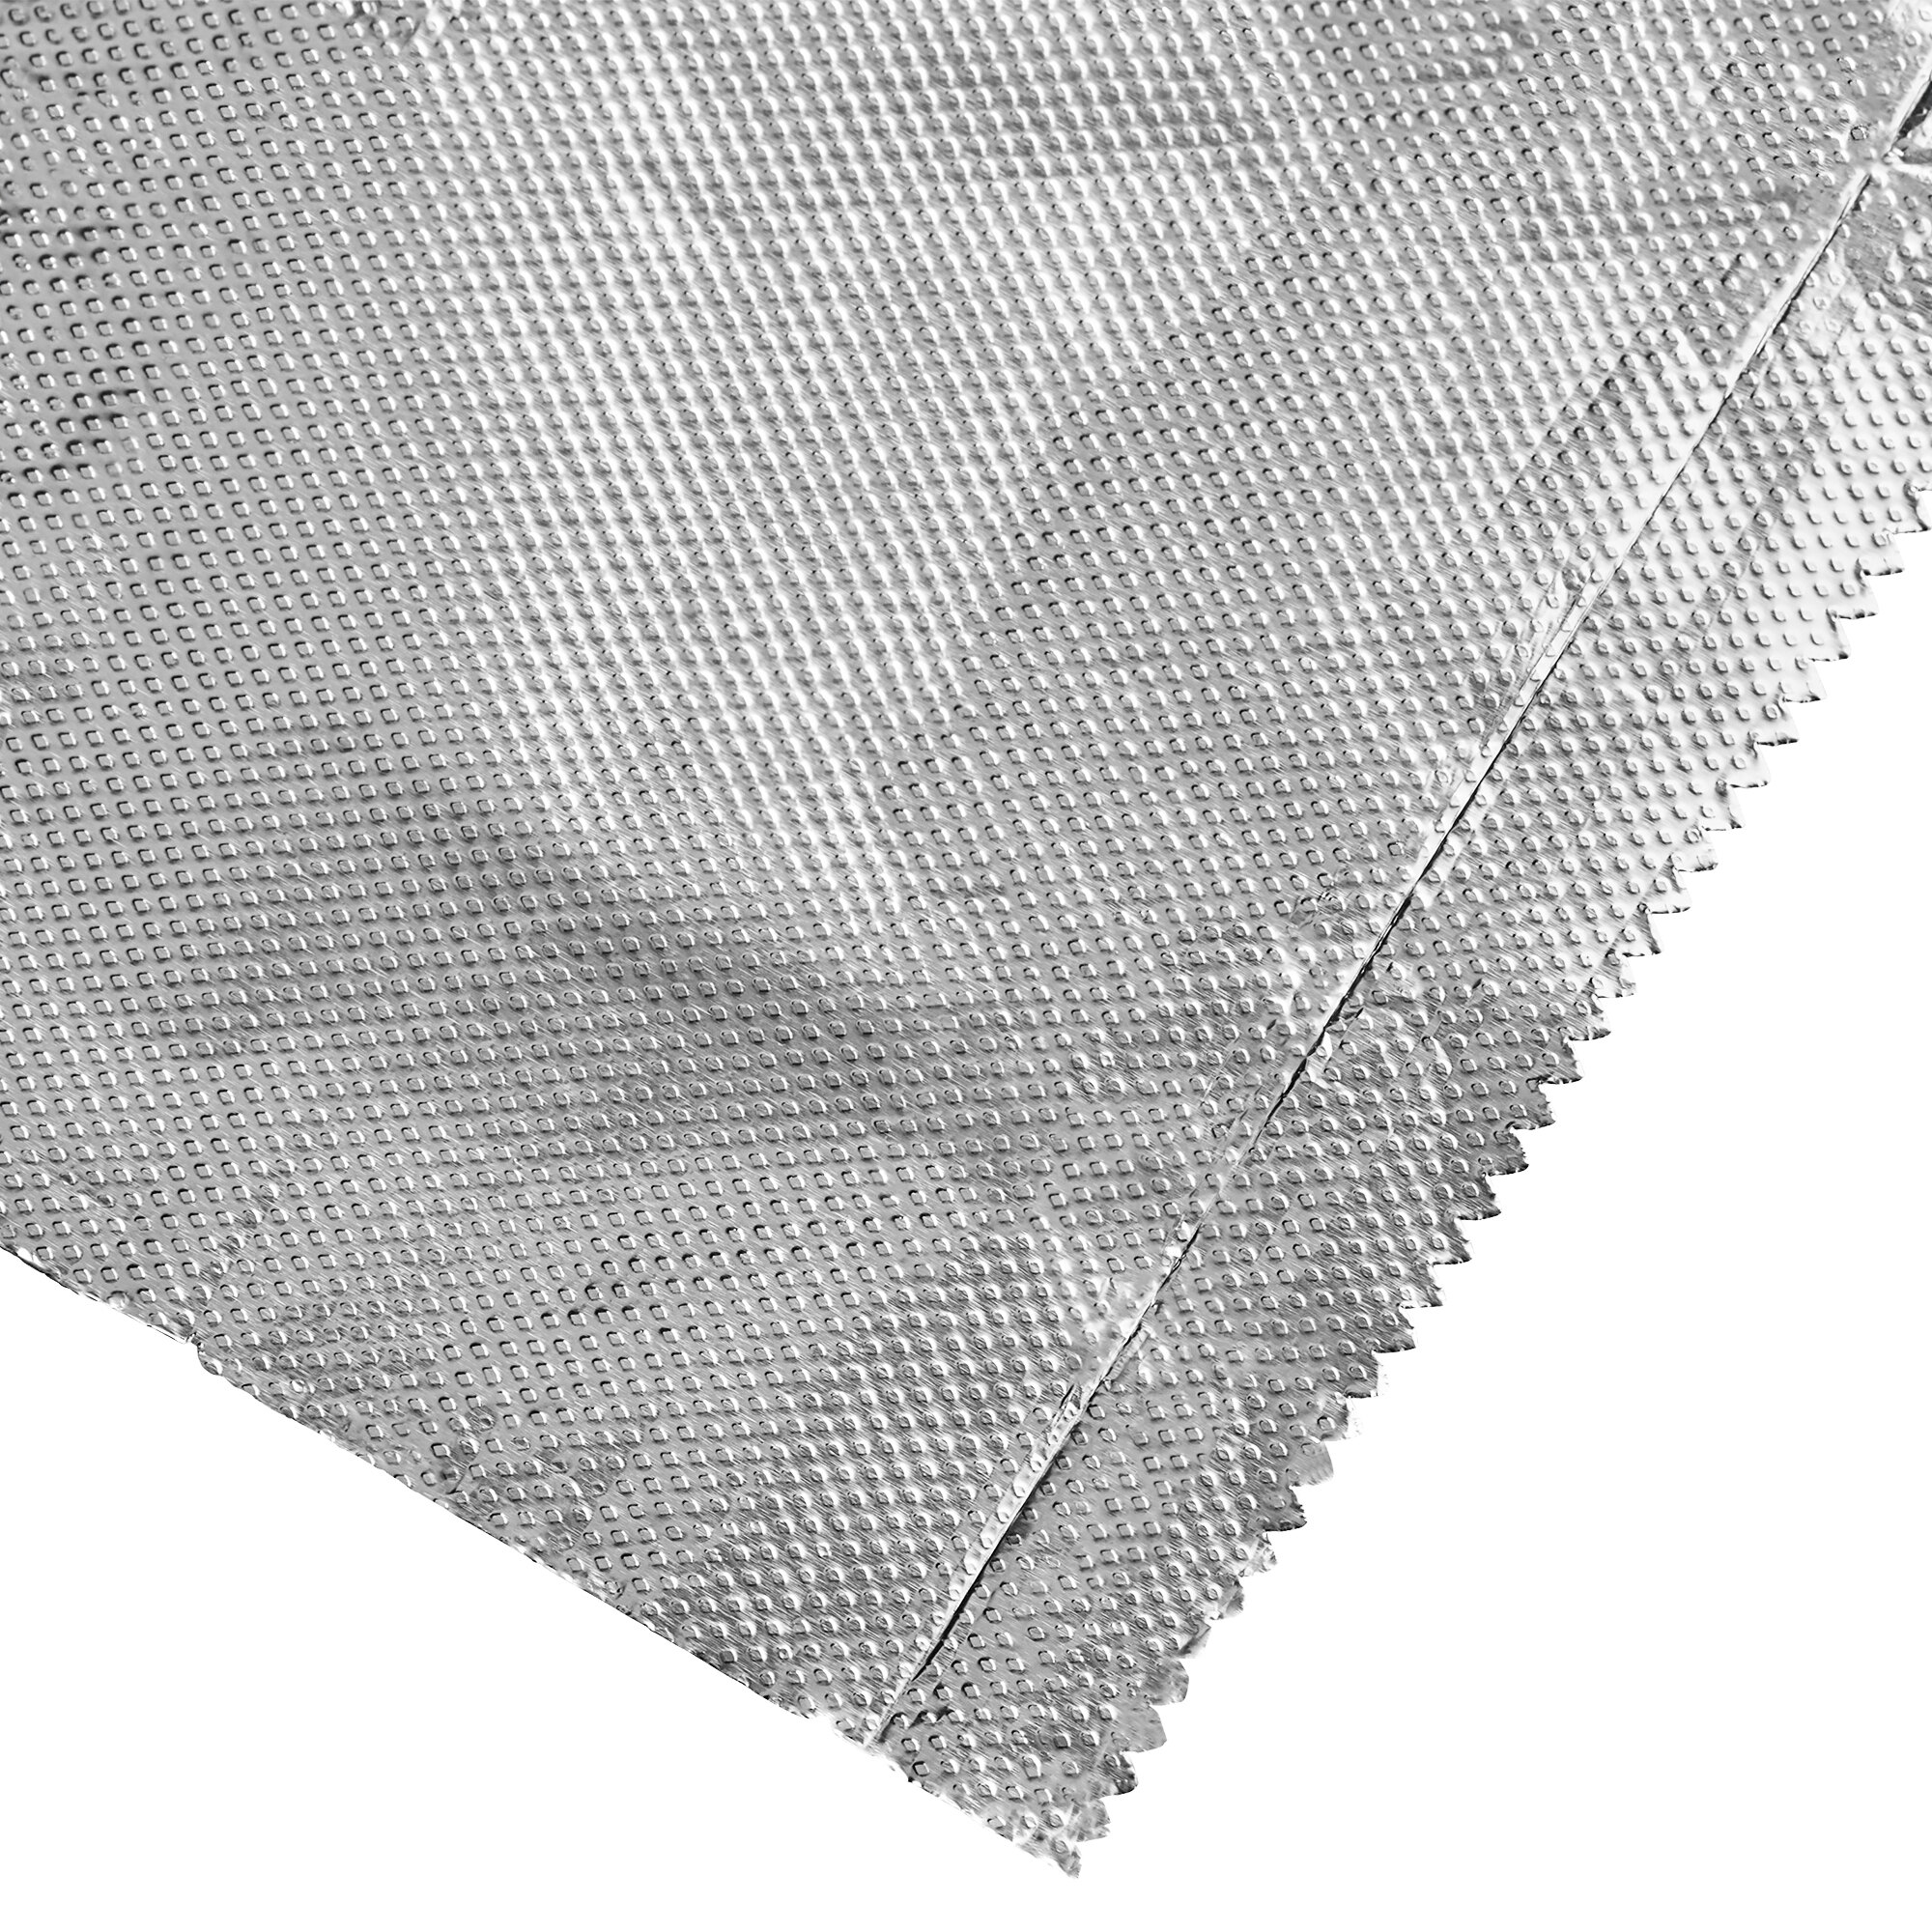 Kroger® Aluminum Foil Pop Ups Individual Sheets Box, 50 ct - Kroger